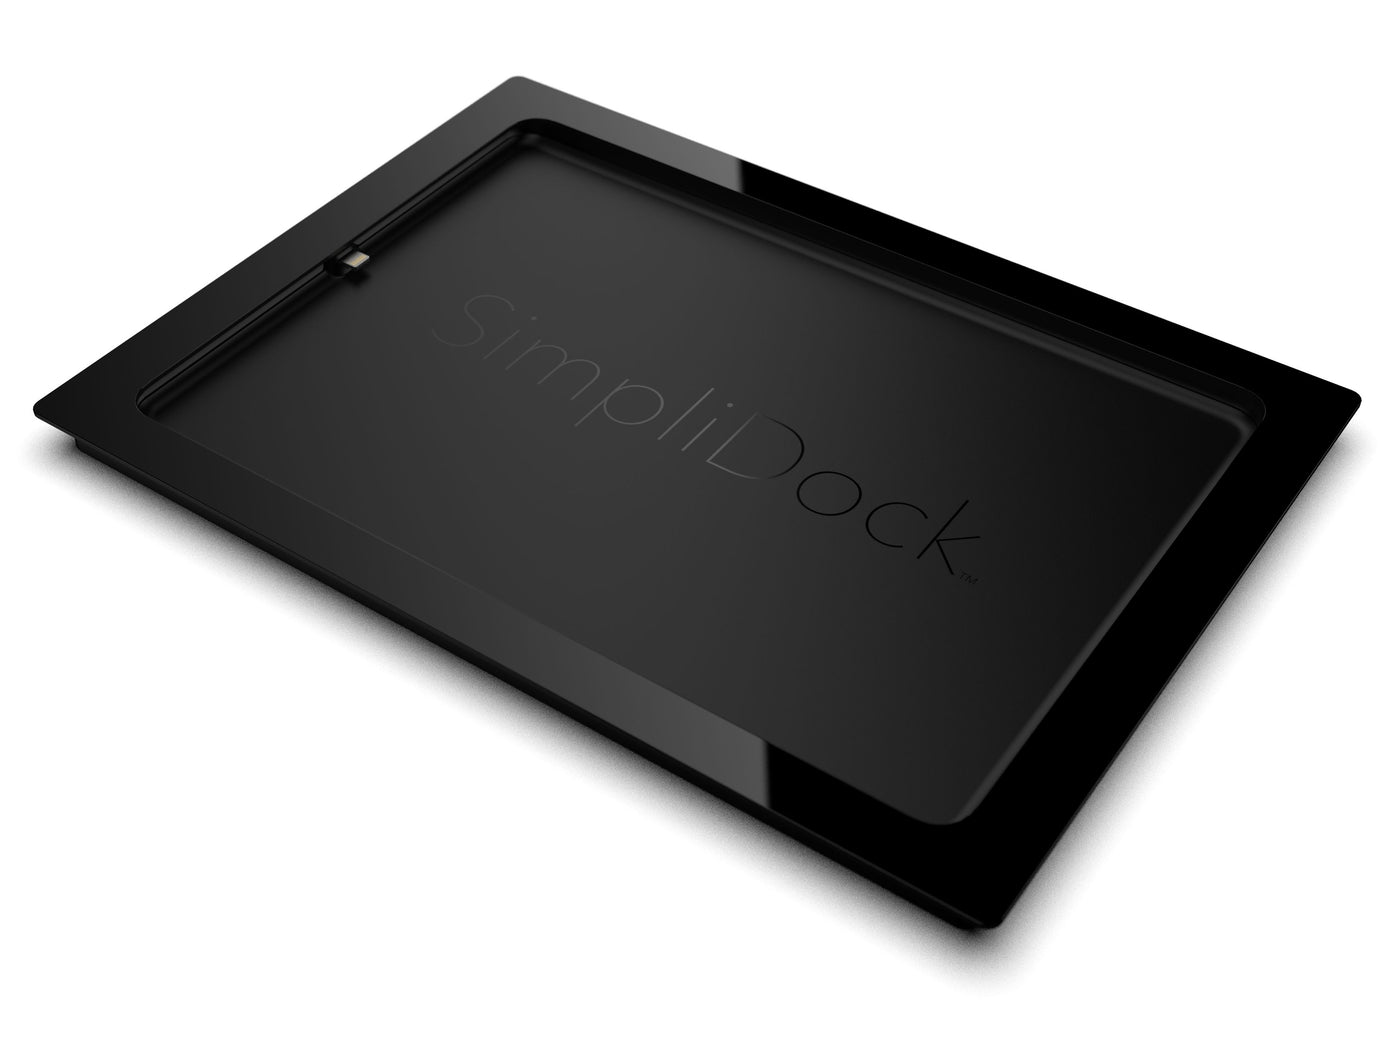 SimpliDock® for iPad® mini 1|2|3